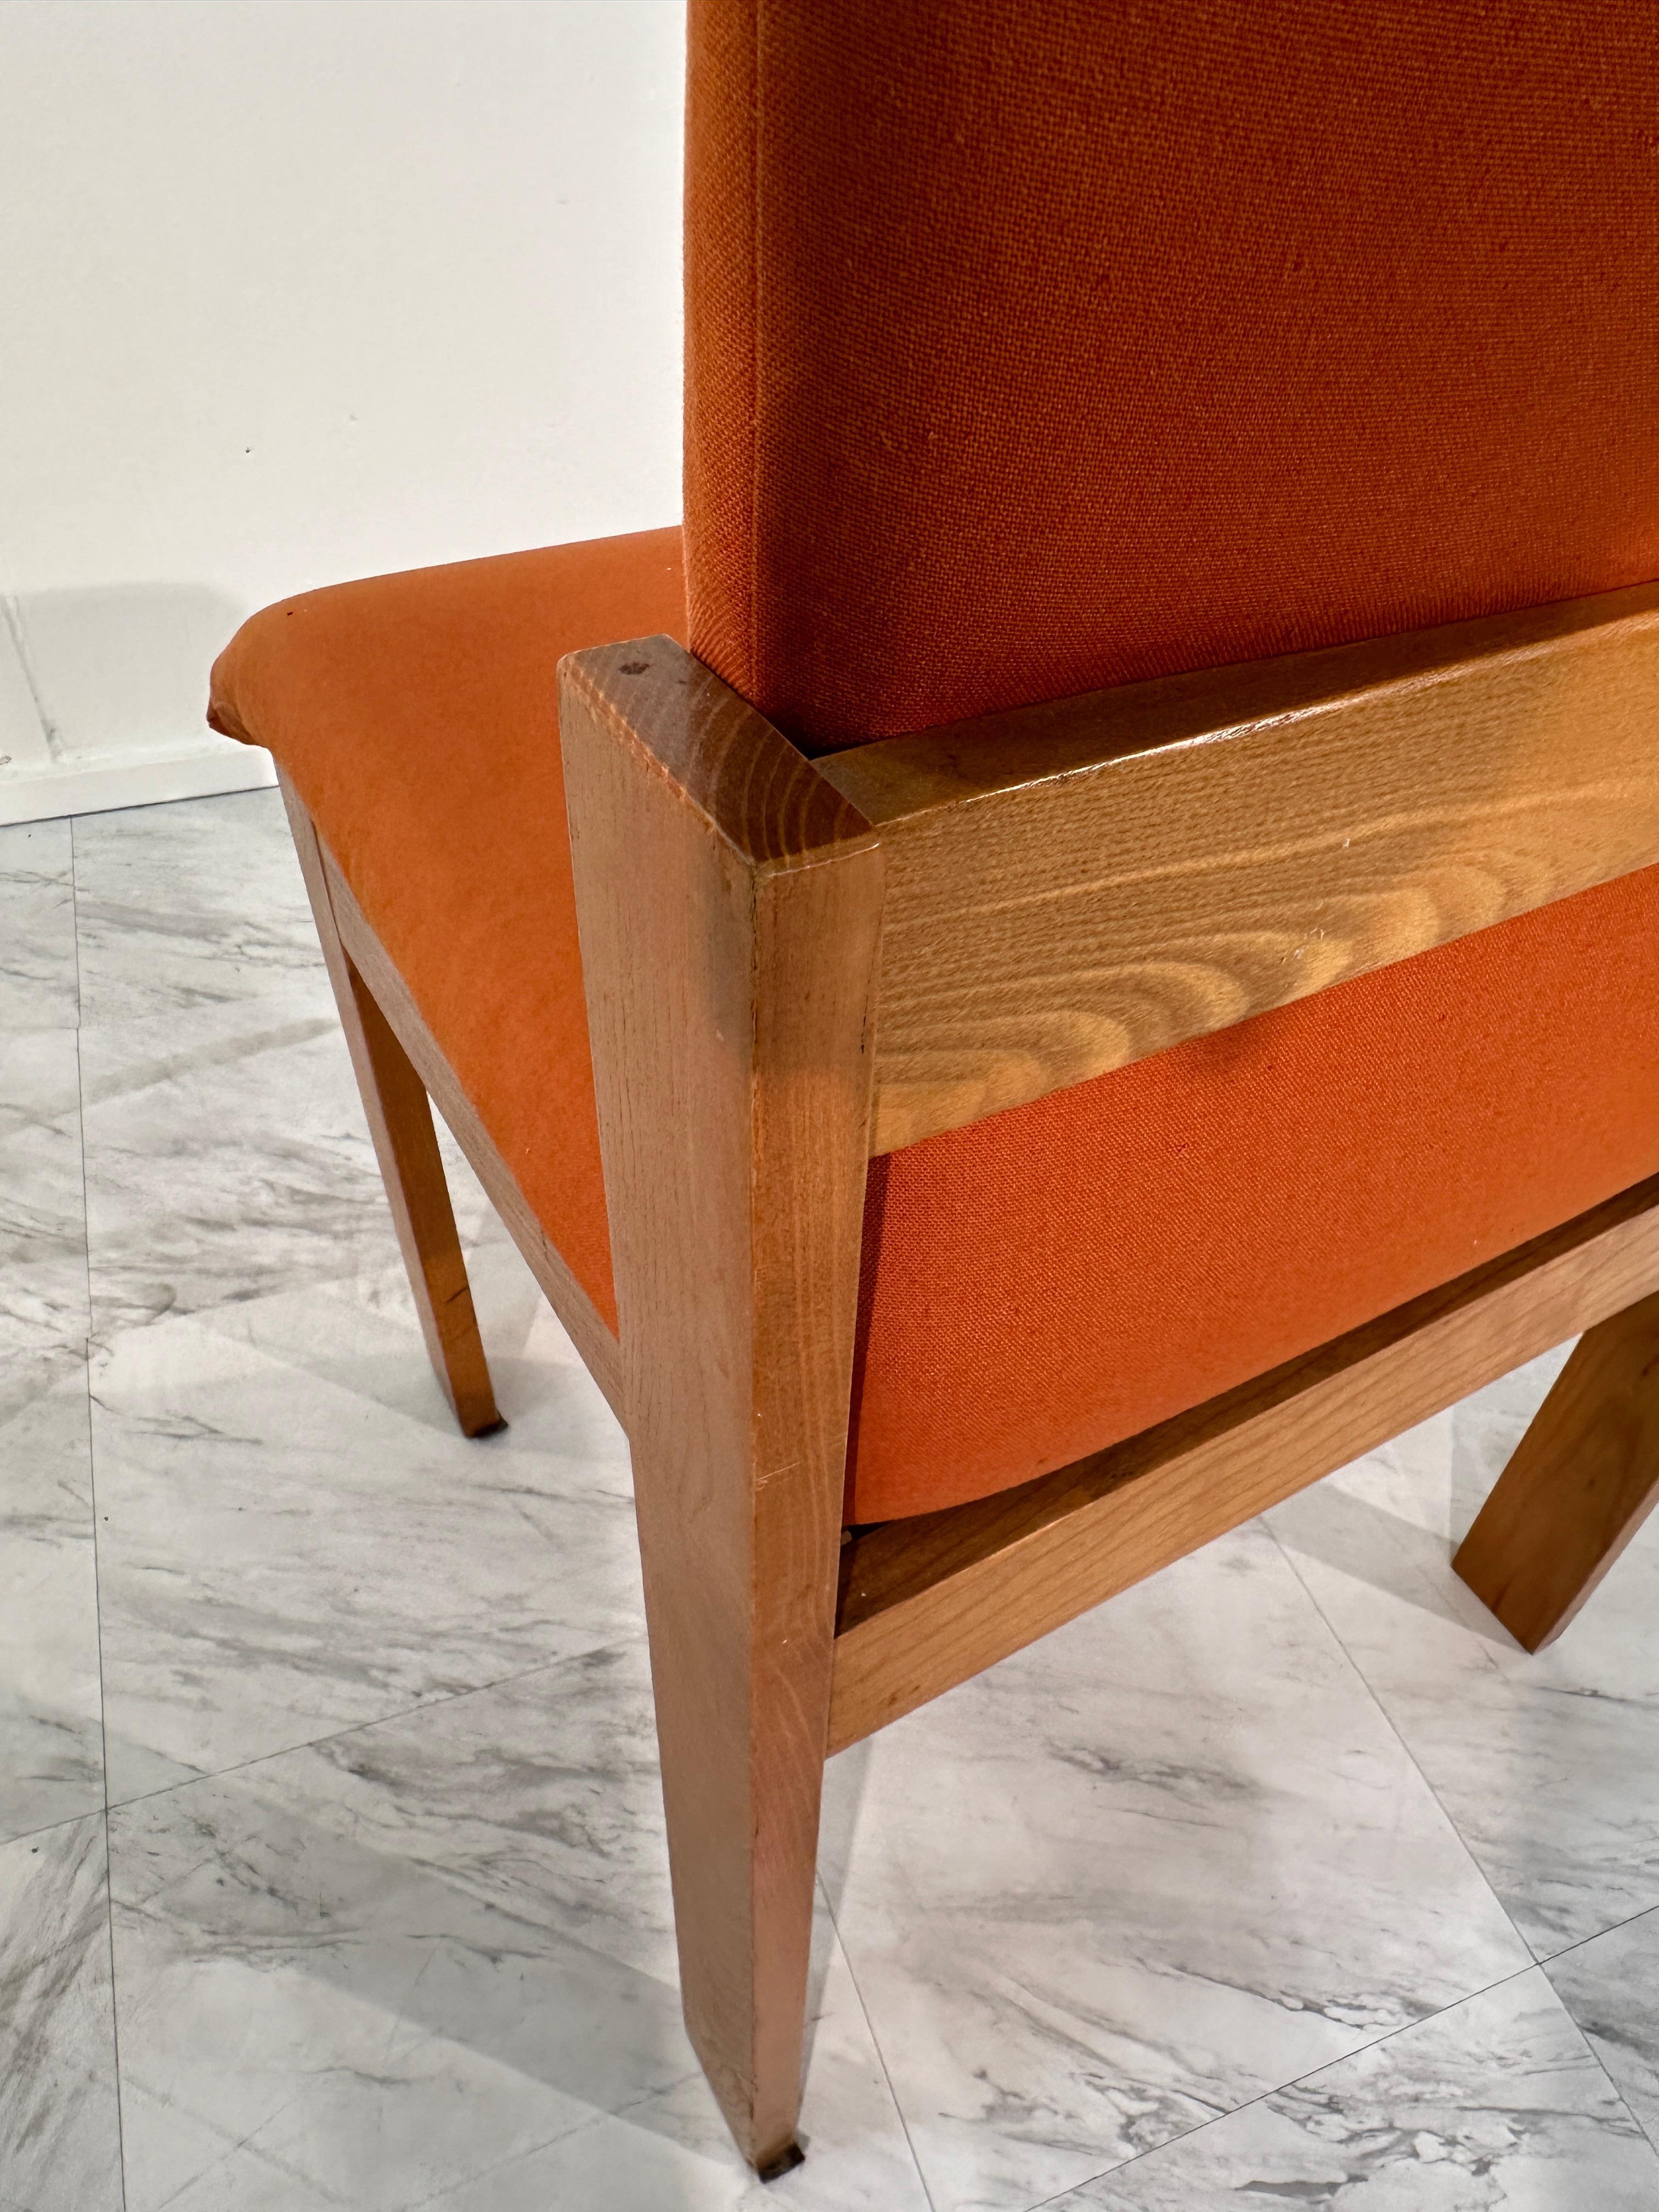 Das Set aus 4 einzigartigen Esszimmerstühlen aus Holz von F.lli Saporiti aus den 1960er Jahren bietet eine beeindruckende Mischung aus künstlerischem Flair und funktionellem Design. Diese Stühle wurden Mitte des 20. Jahrhunderts von der renommierten